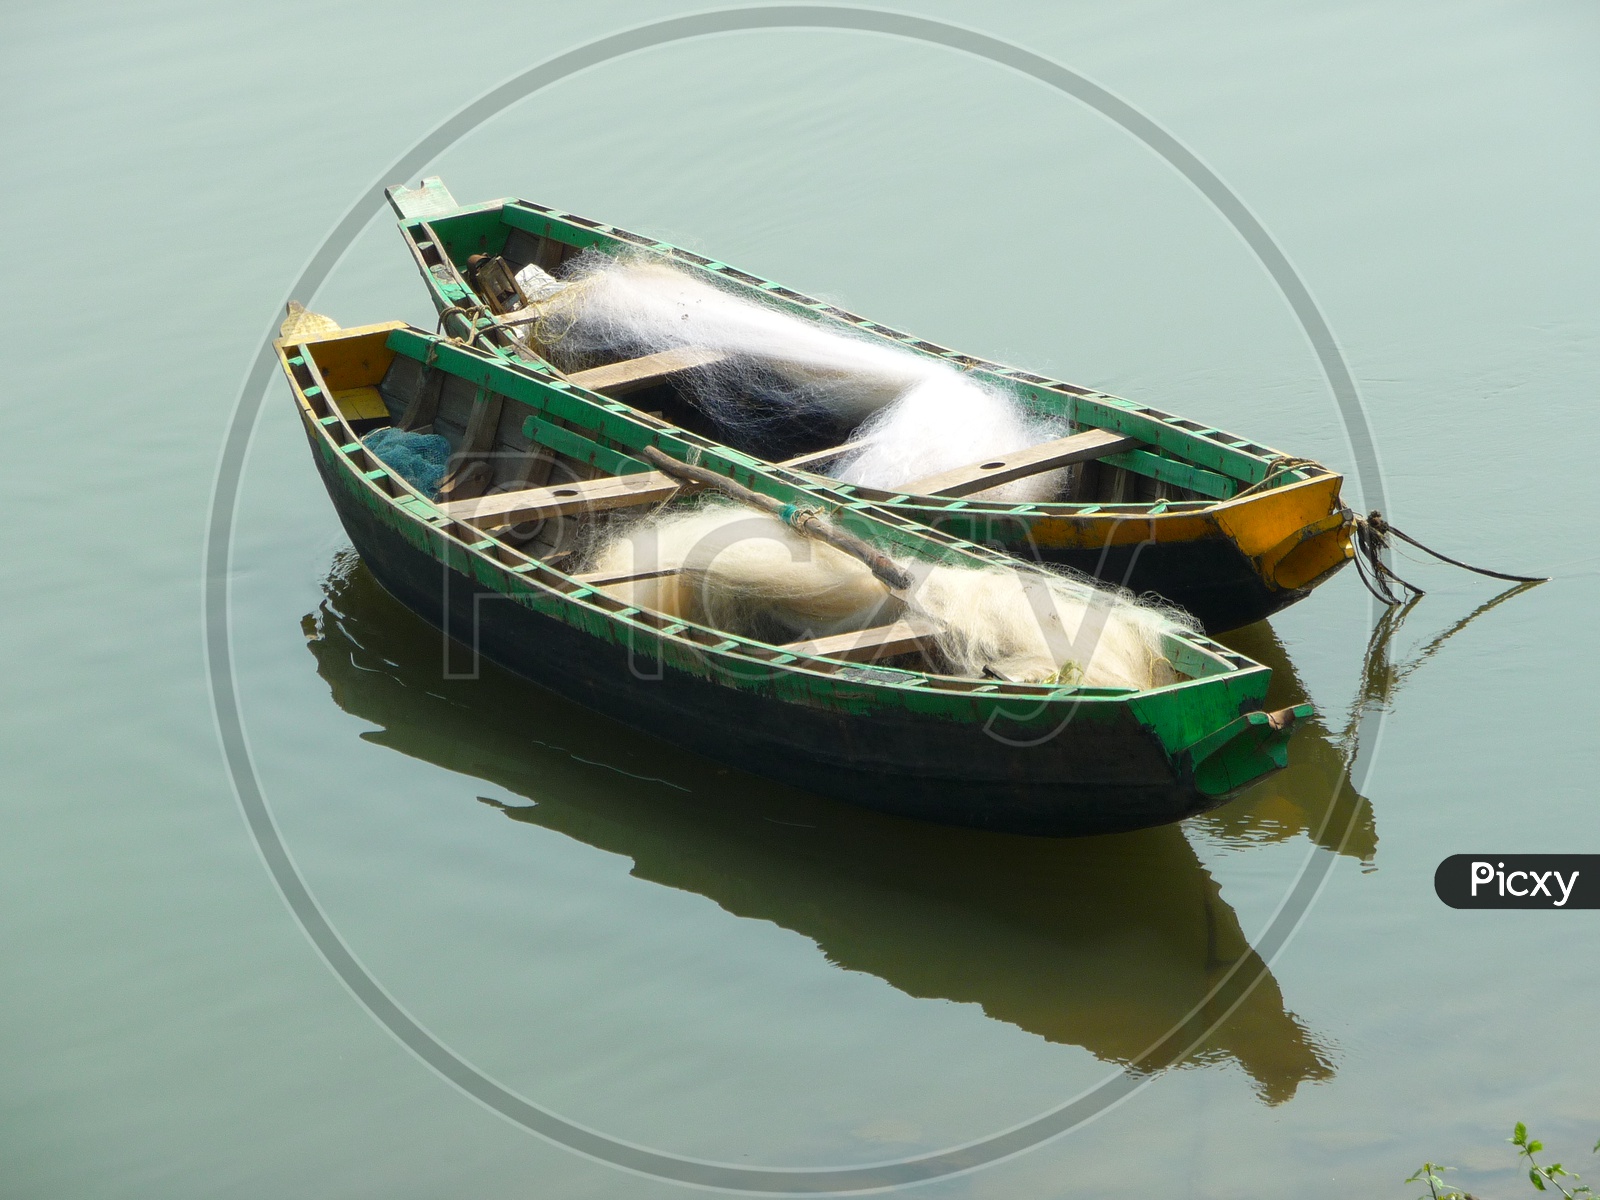 Fisherman Boat on Godavari River